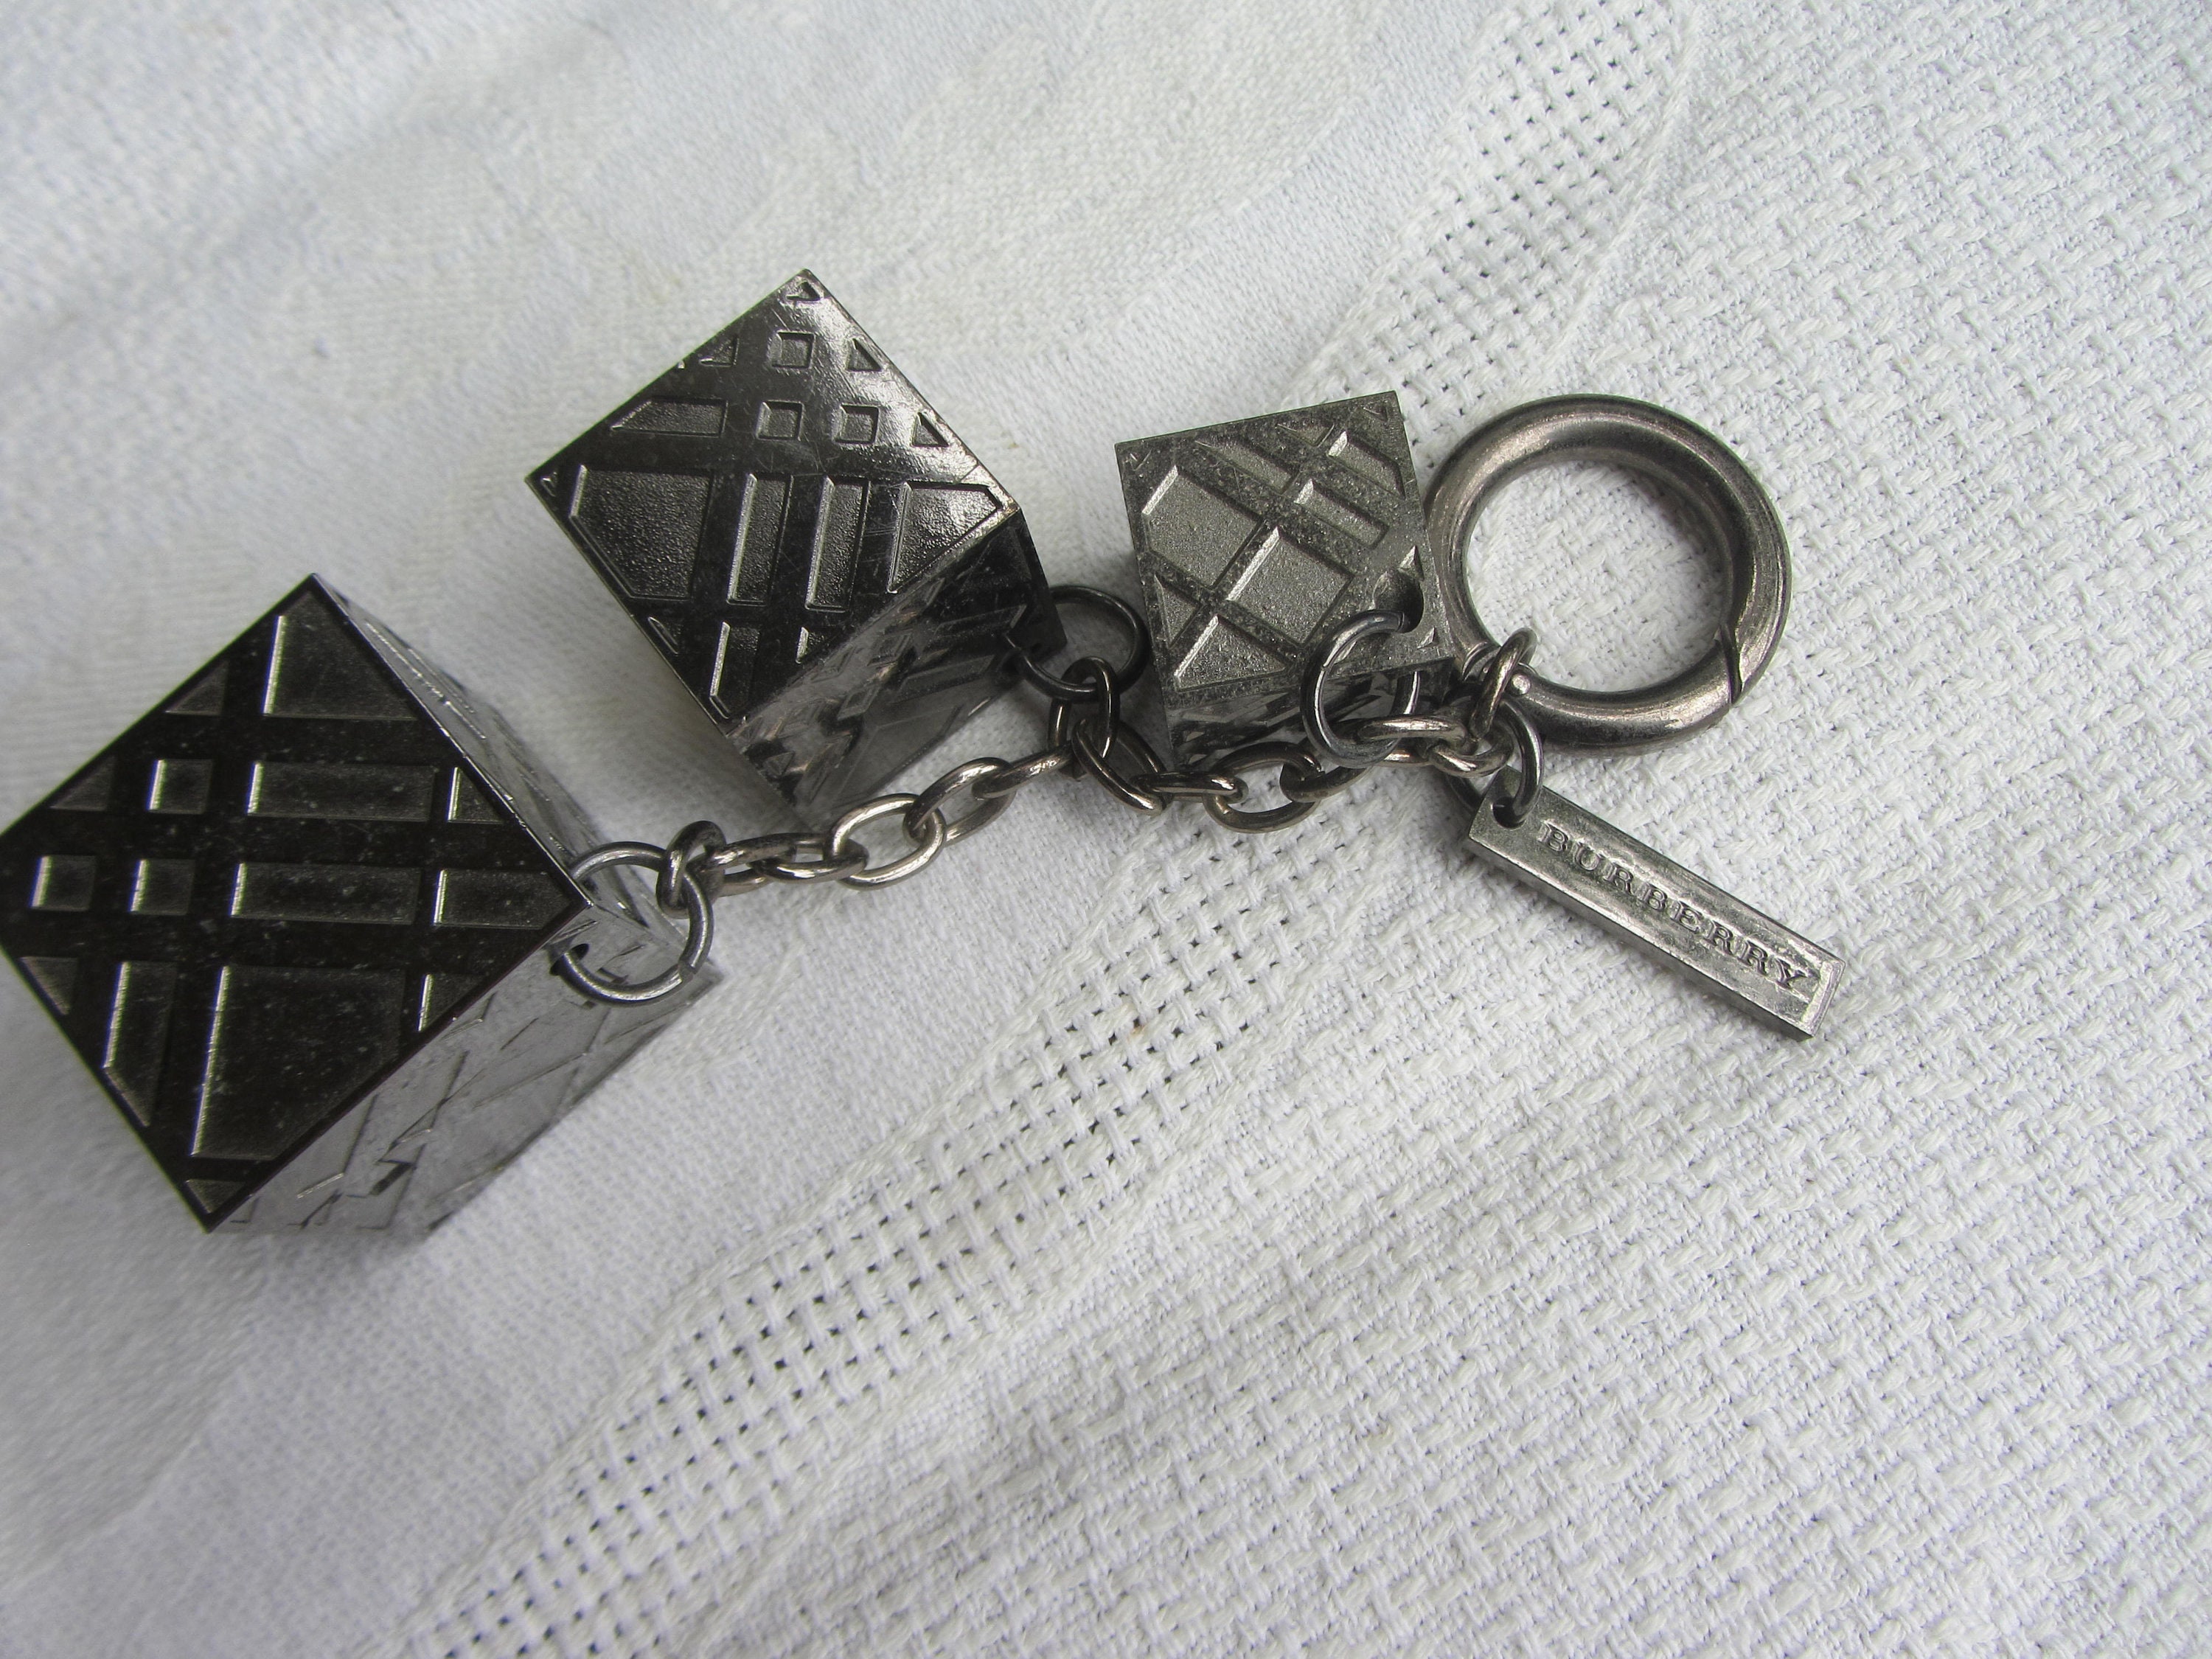 Burberry Black Keychain